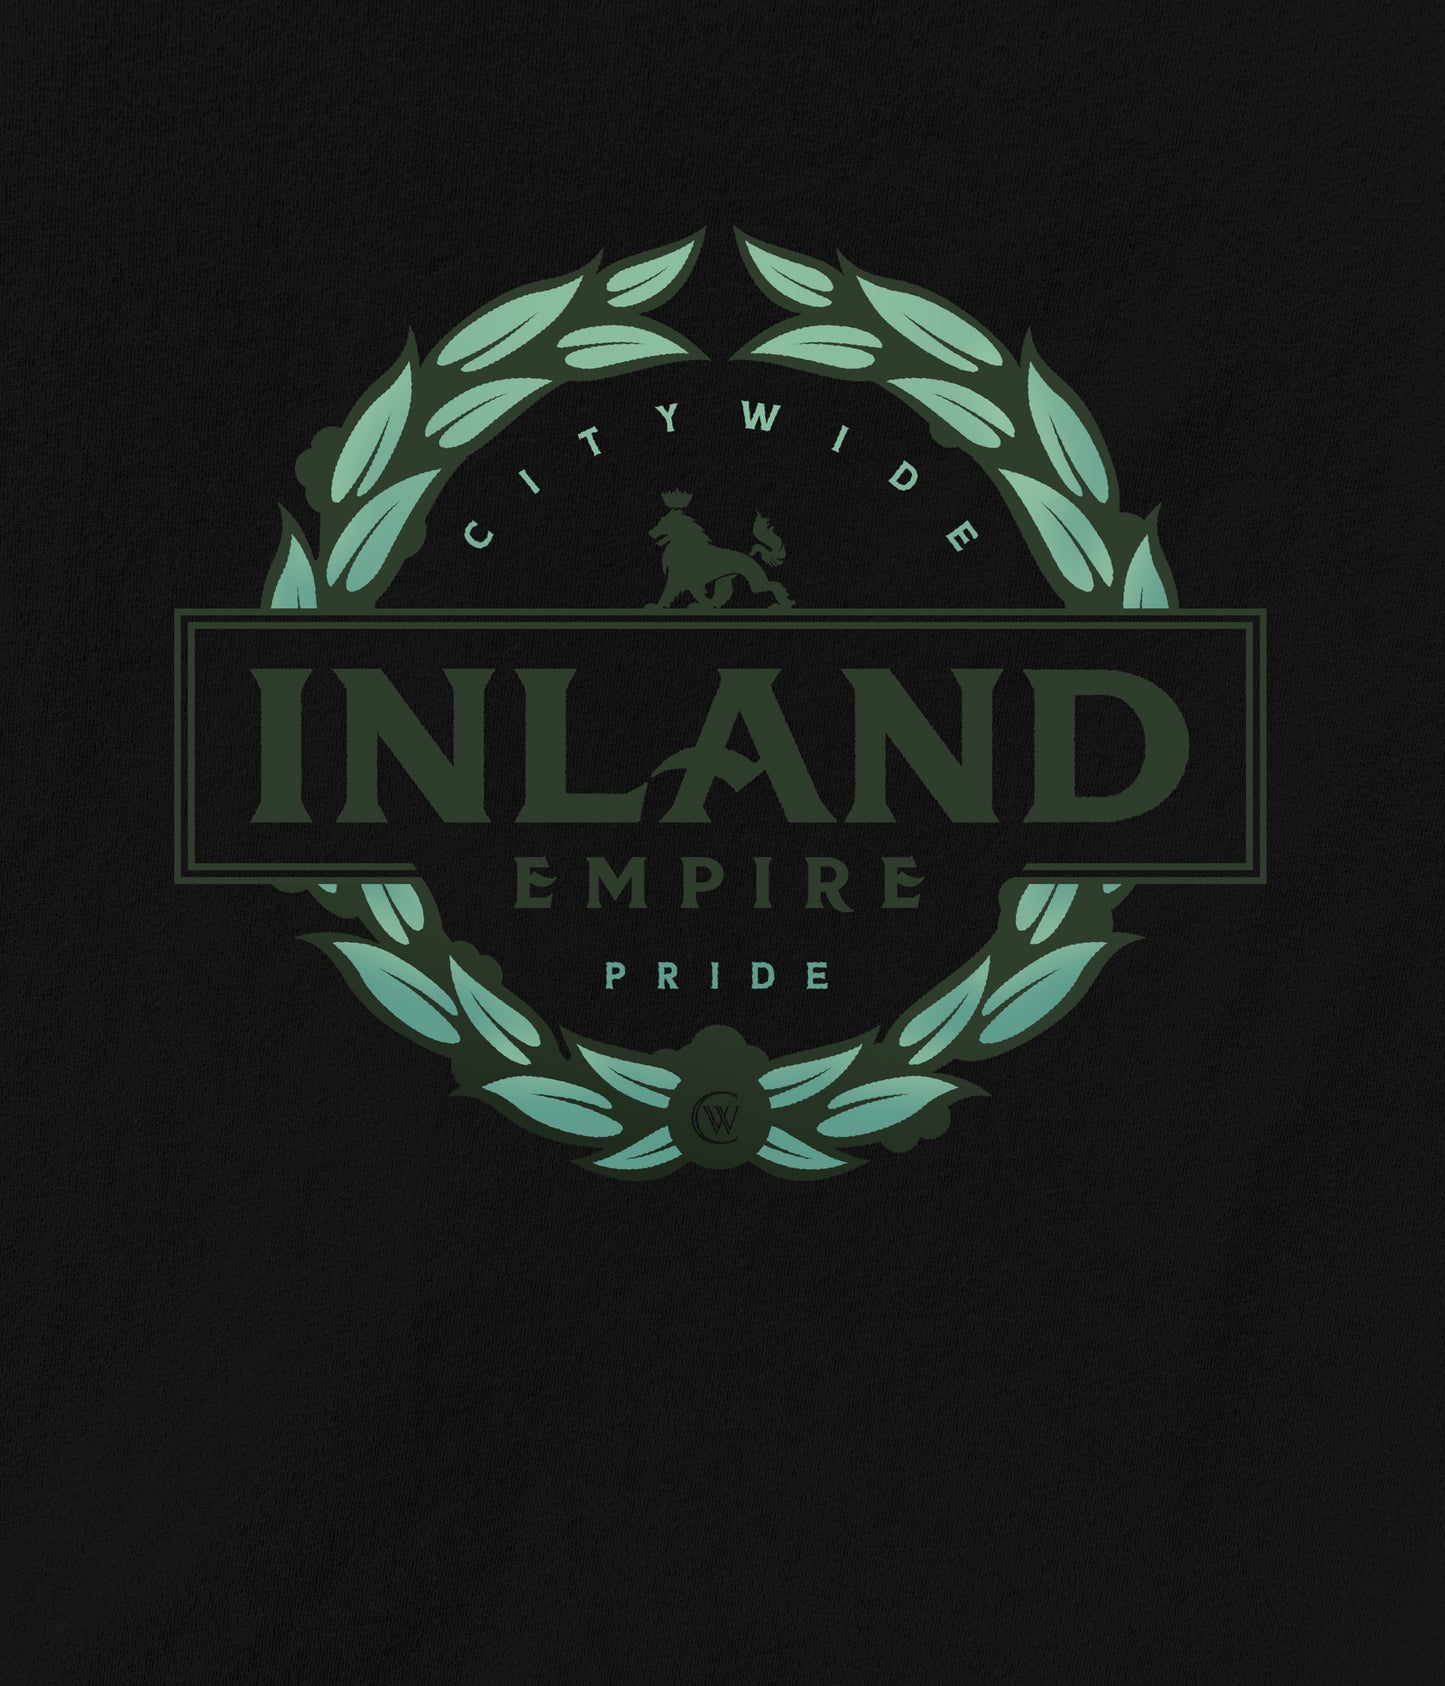 Inland Empire The Pride